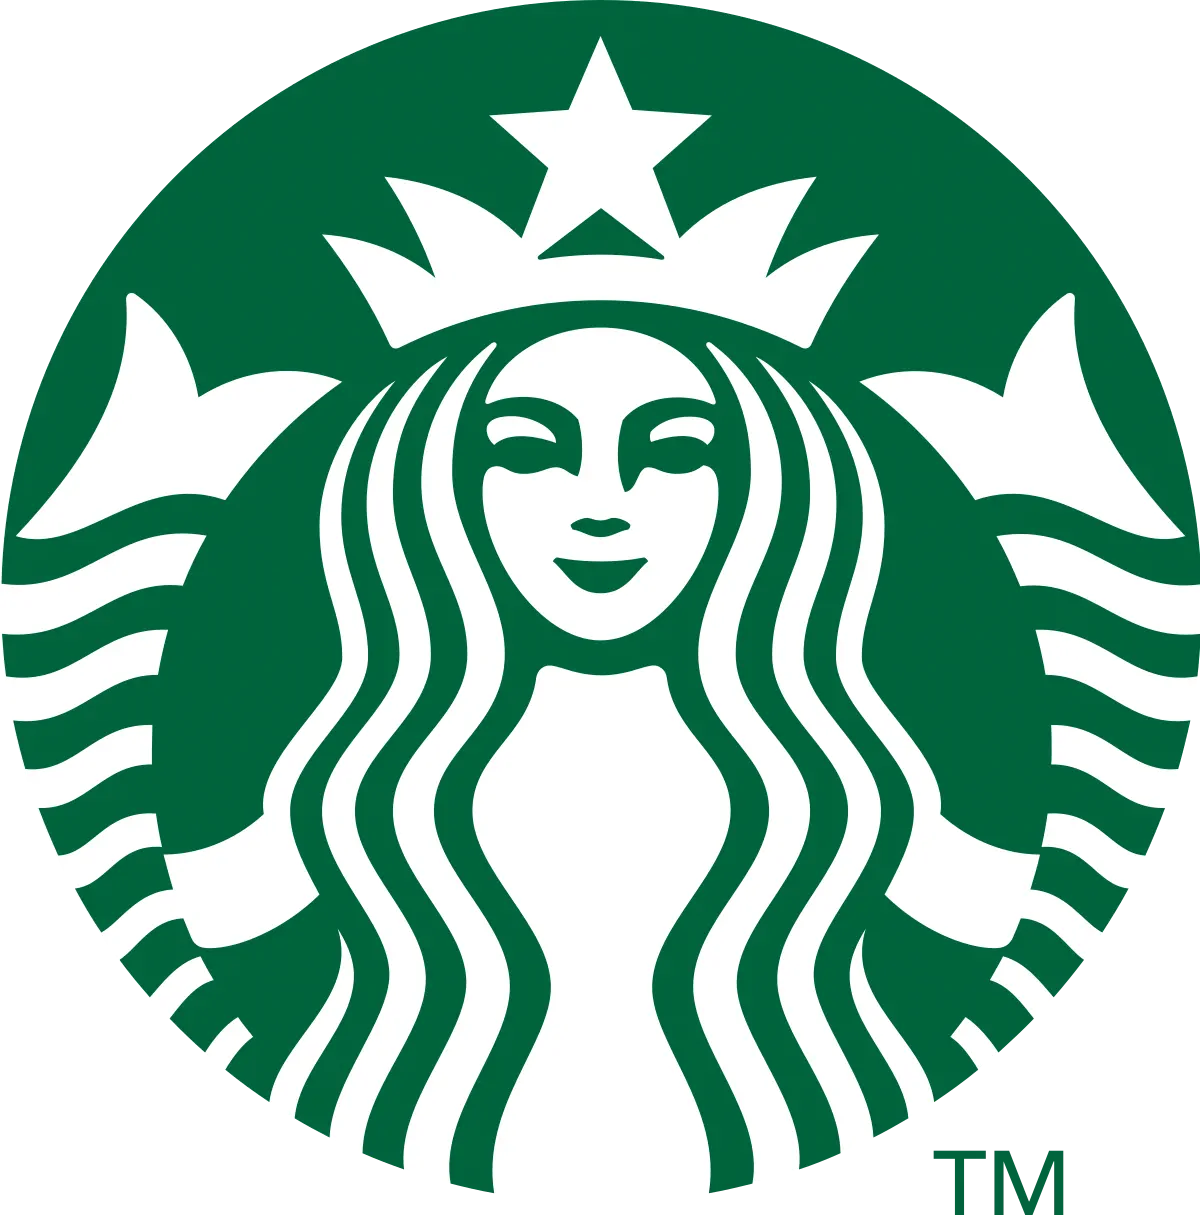 Starbucks logo green